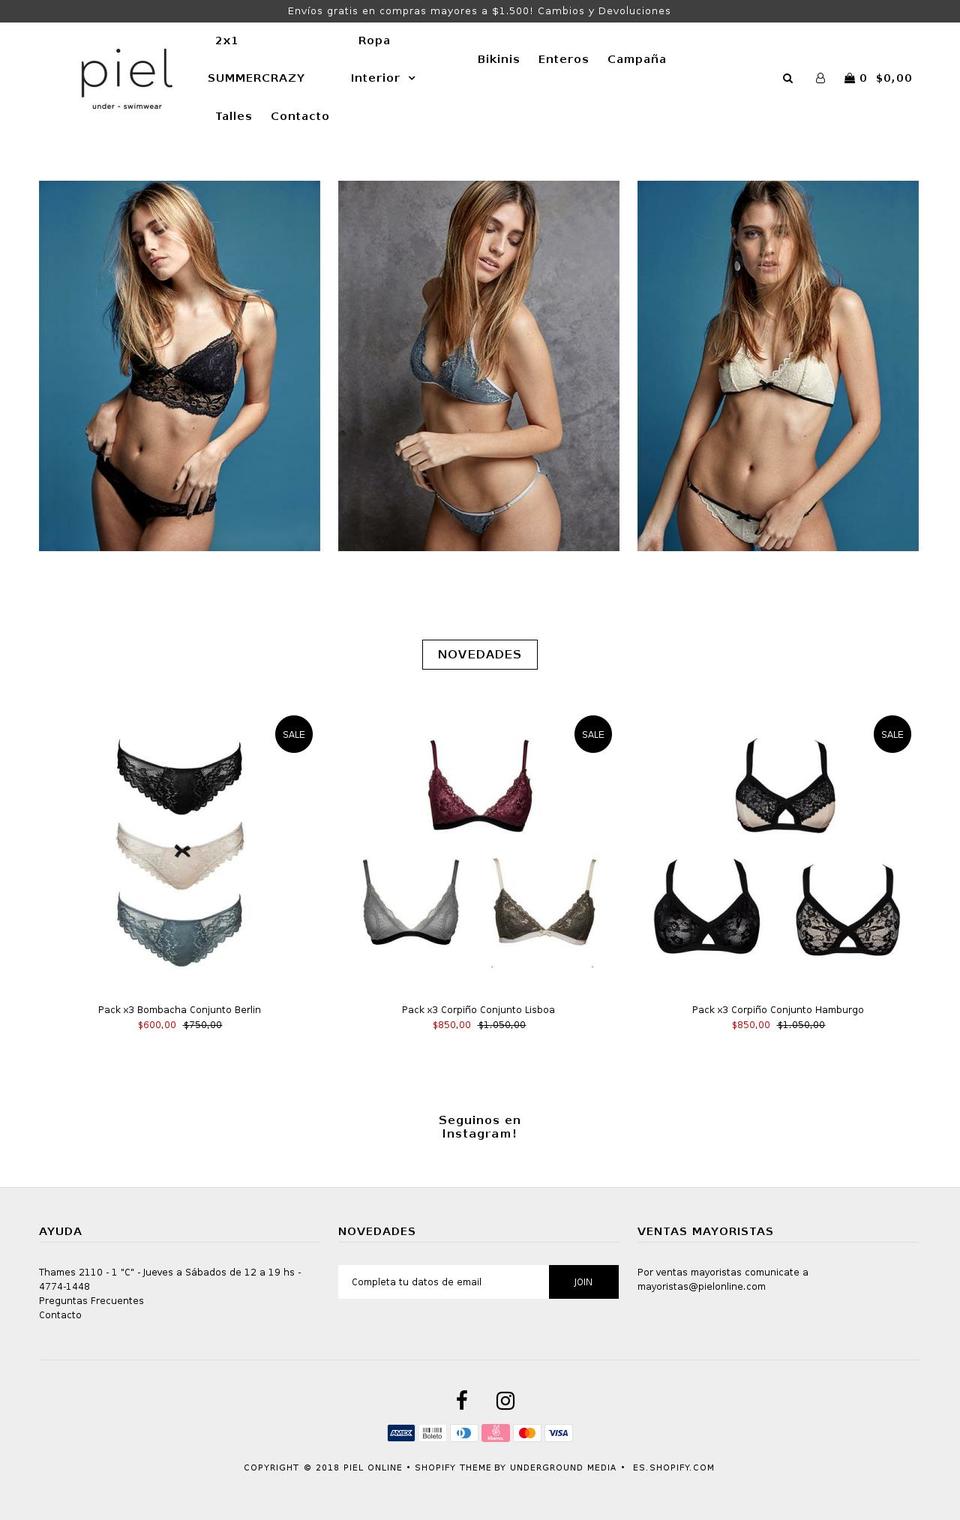 pielonline.com shopify website screenshot